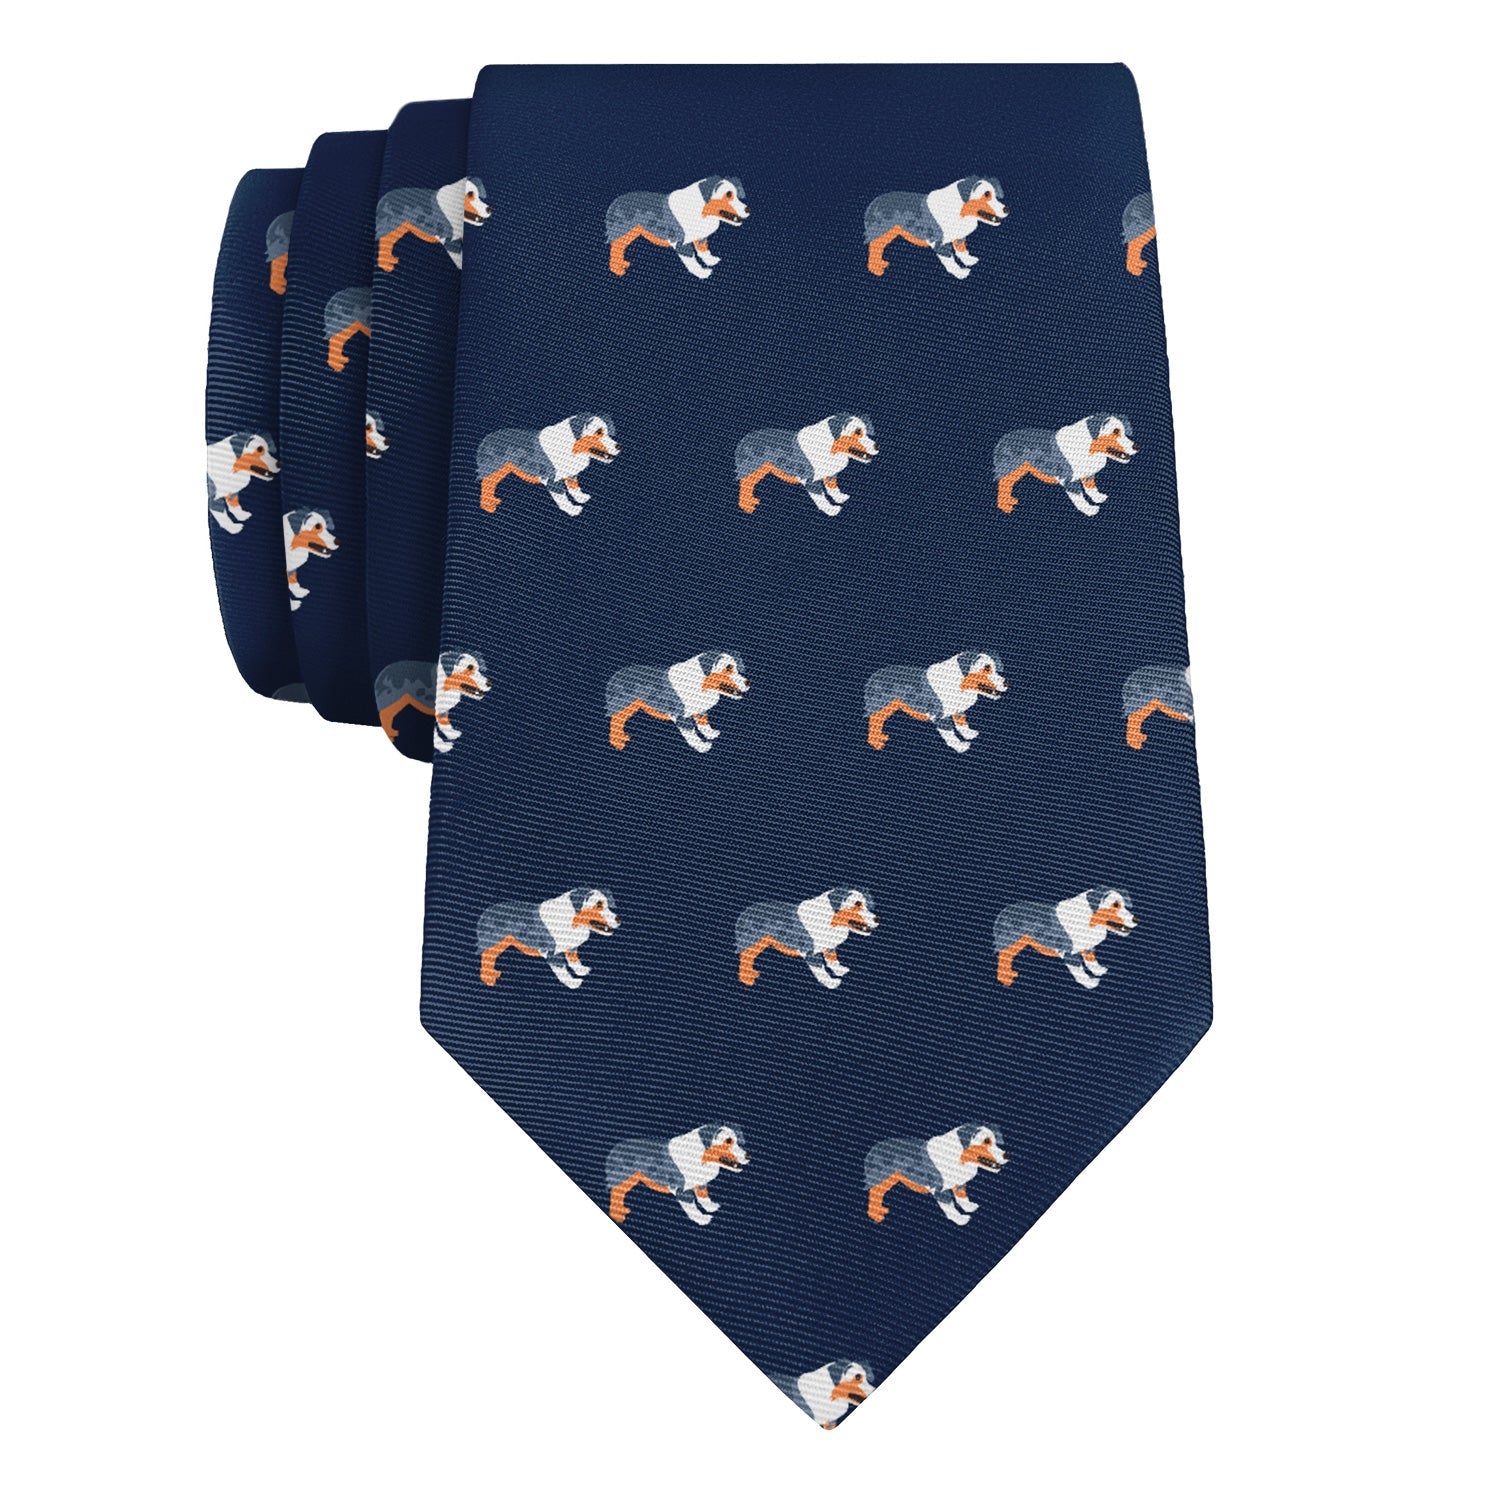 Australian Shepherd Necktie - Knotty 2.75" -  - Knotty Tie Co.